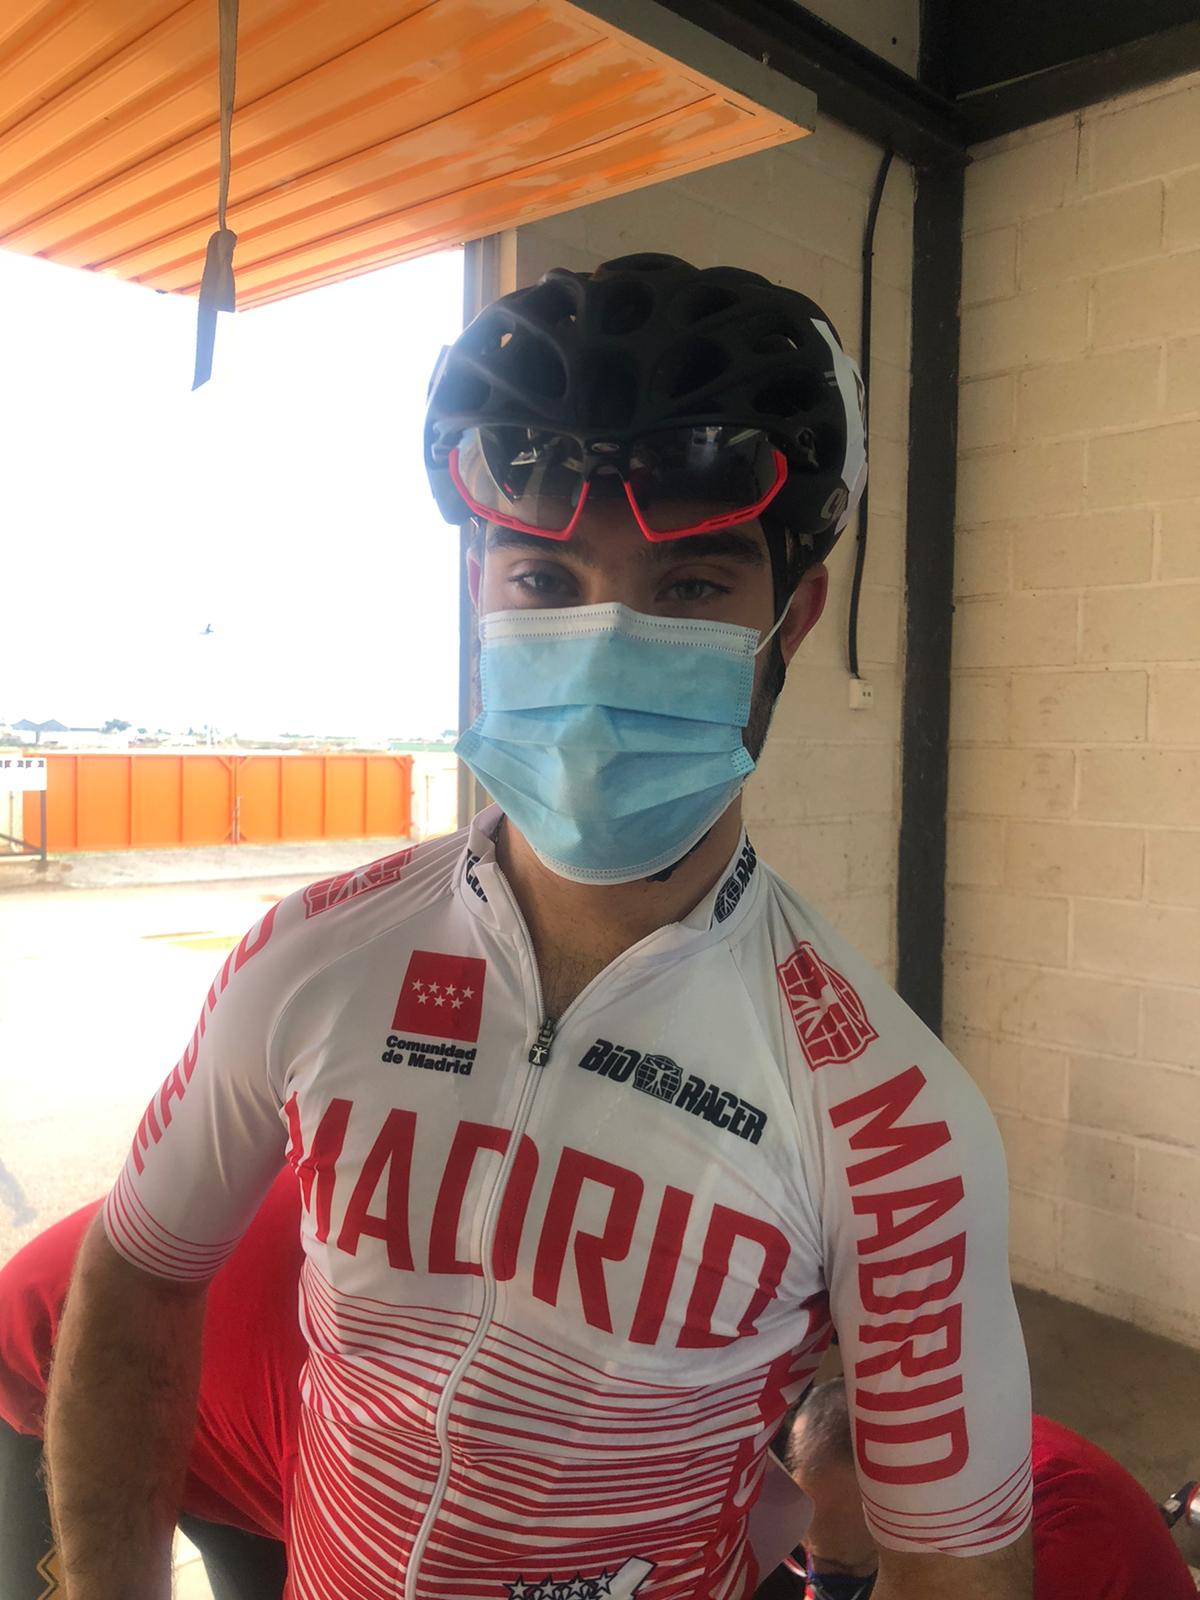 El Ciclismo Adaptado madrileño no especula y se cuelga 17 medallas en los Nacionales de ruta de Cartagena